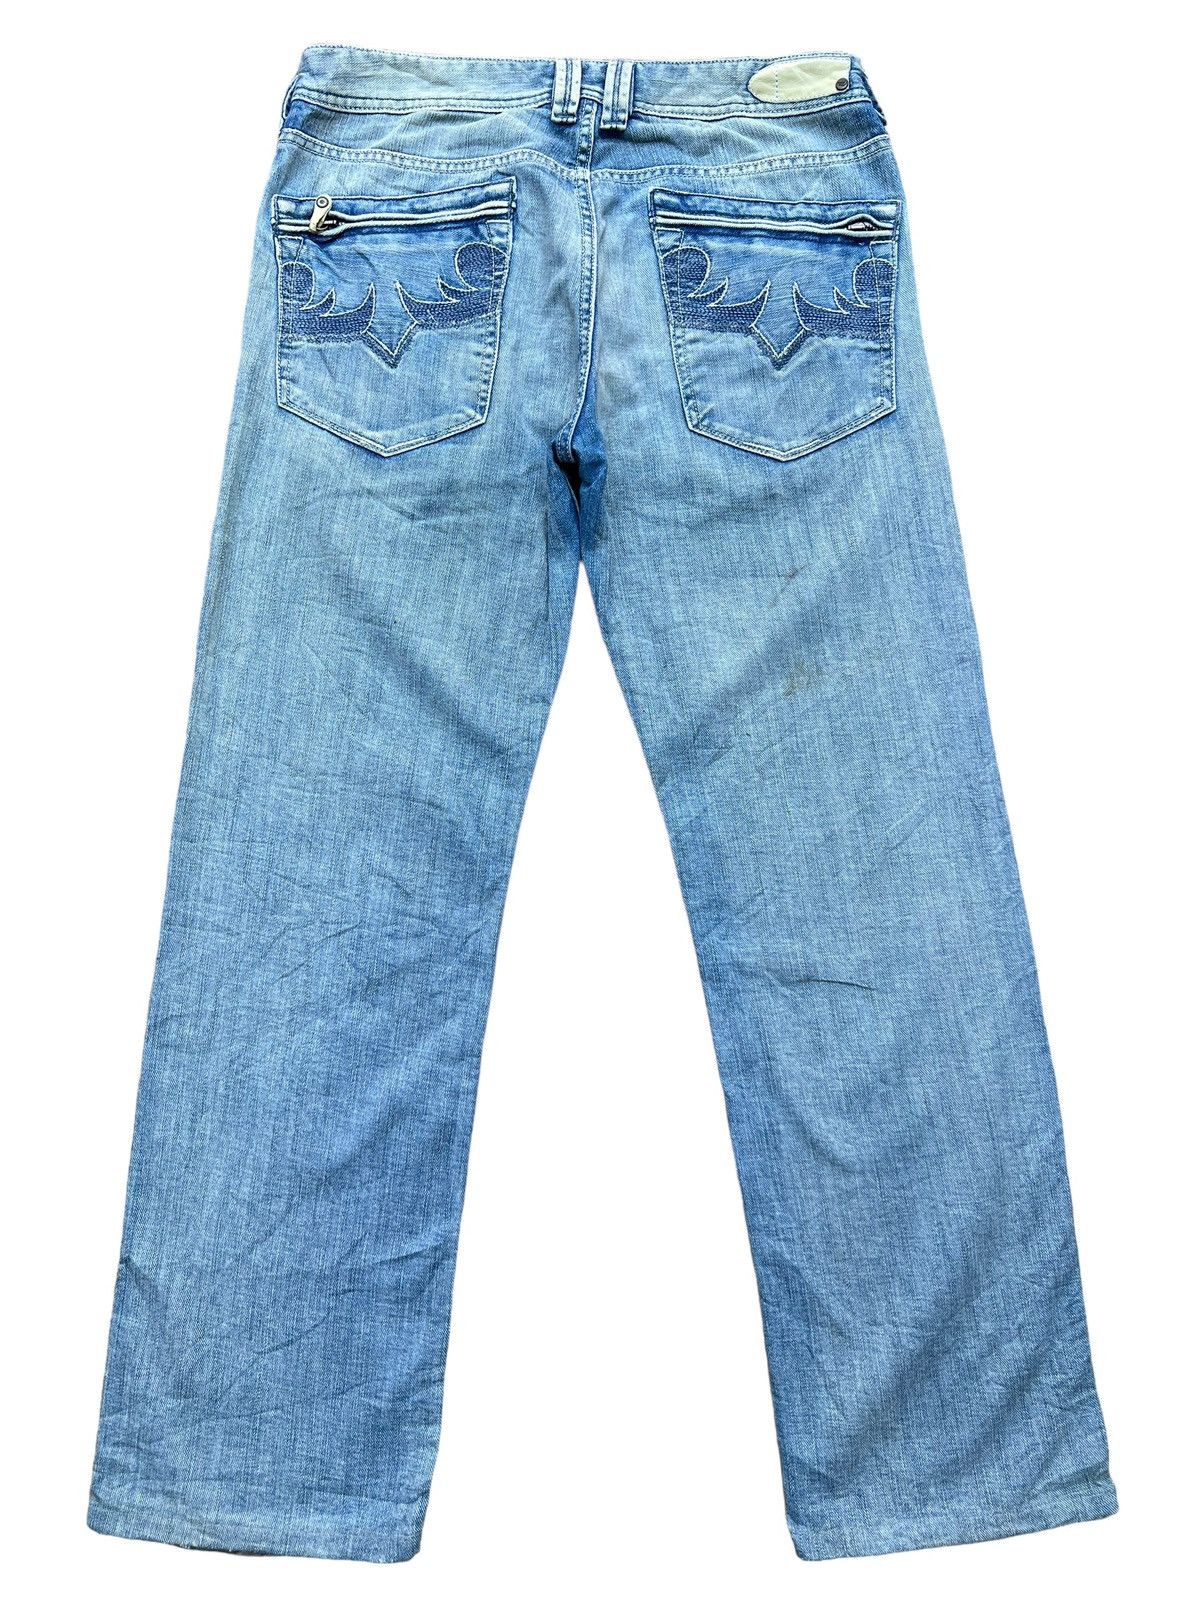 Vintage Distressed Diesel Industry Wide Jeans 32x30 - 3